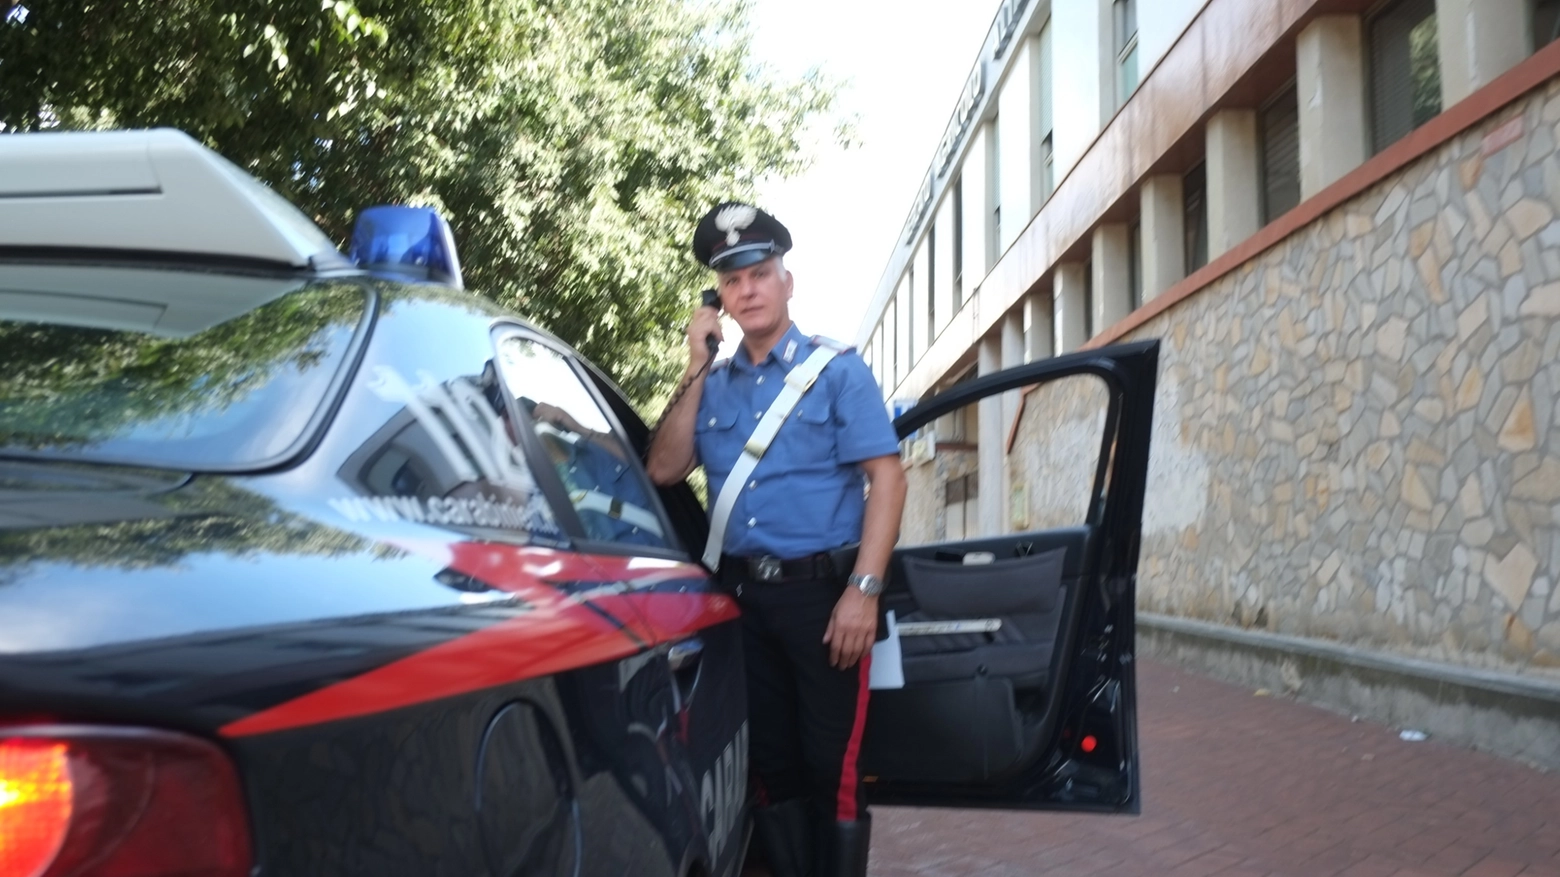 Guida ubriaco, denunciato dai carabinieri (Foto di repertorio Frasca)